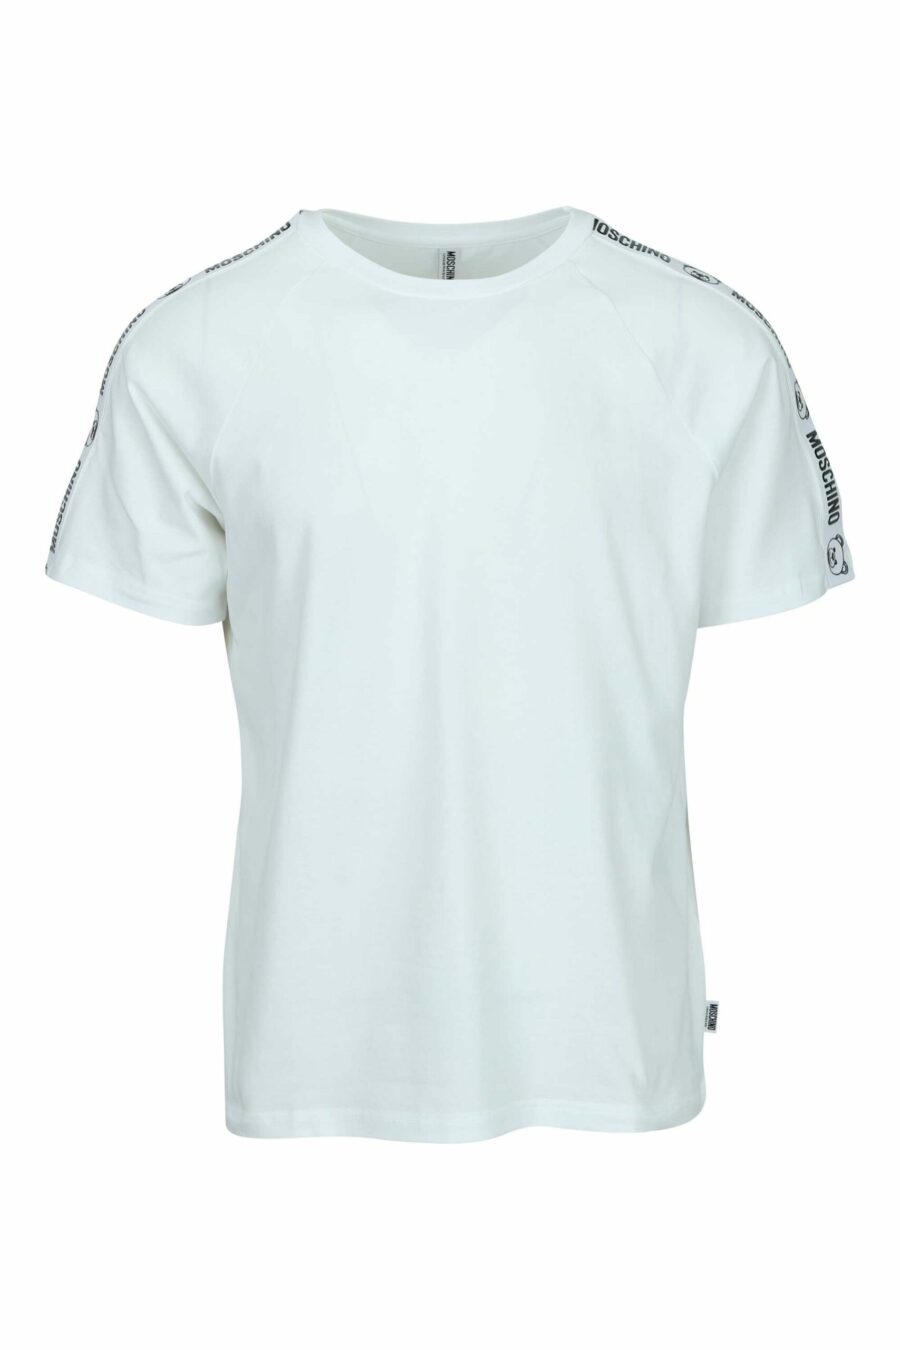 T-shirt branca com o logótipo do urso "underbear" na faixa do ombro - 667113602462 scaled